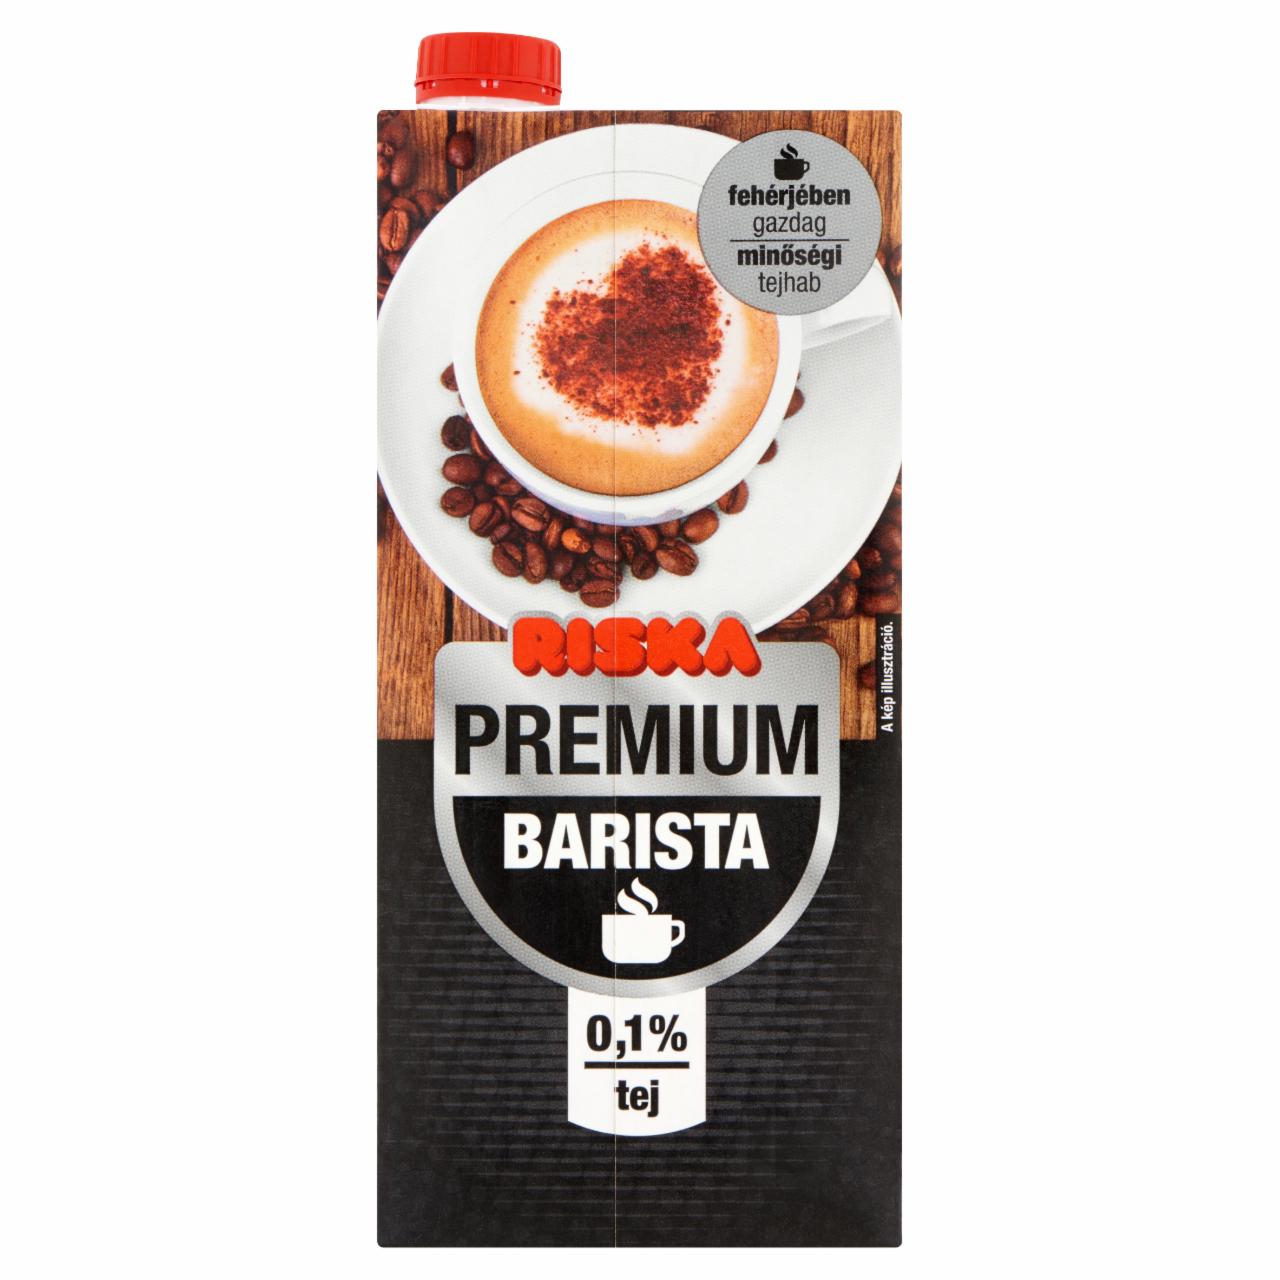 Képek - Riska Premium Barista UHT fehérjében gazdag sovány tej 0,1% 1000 ml